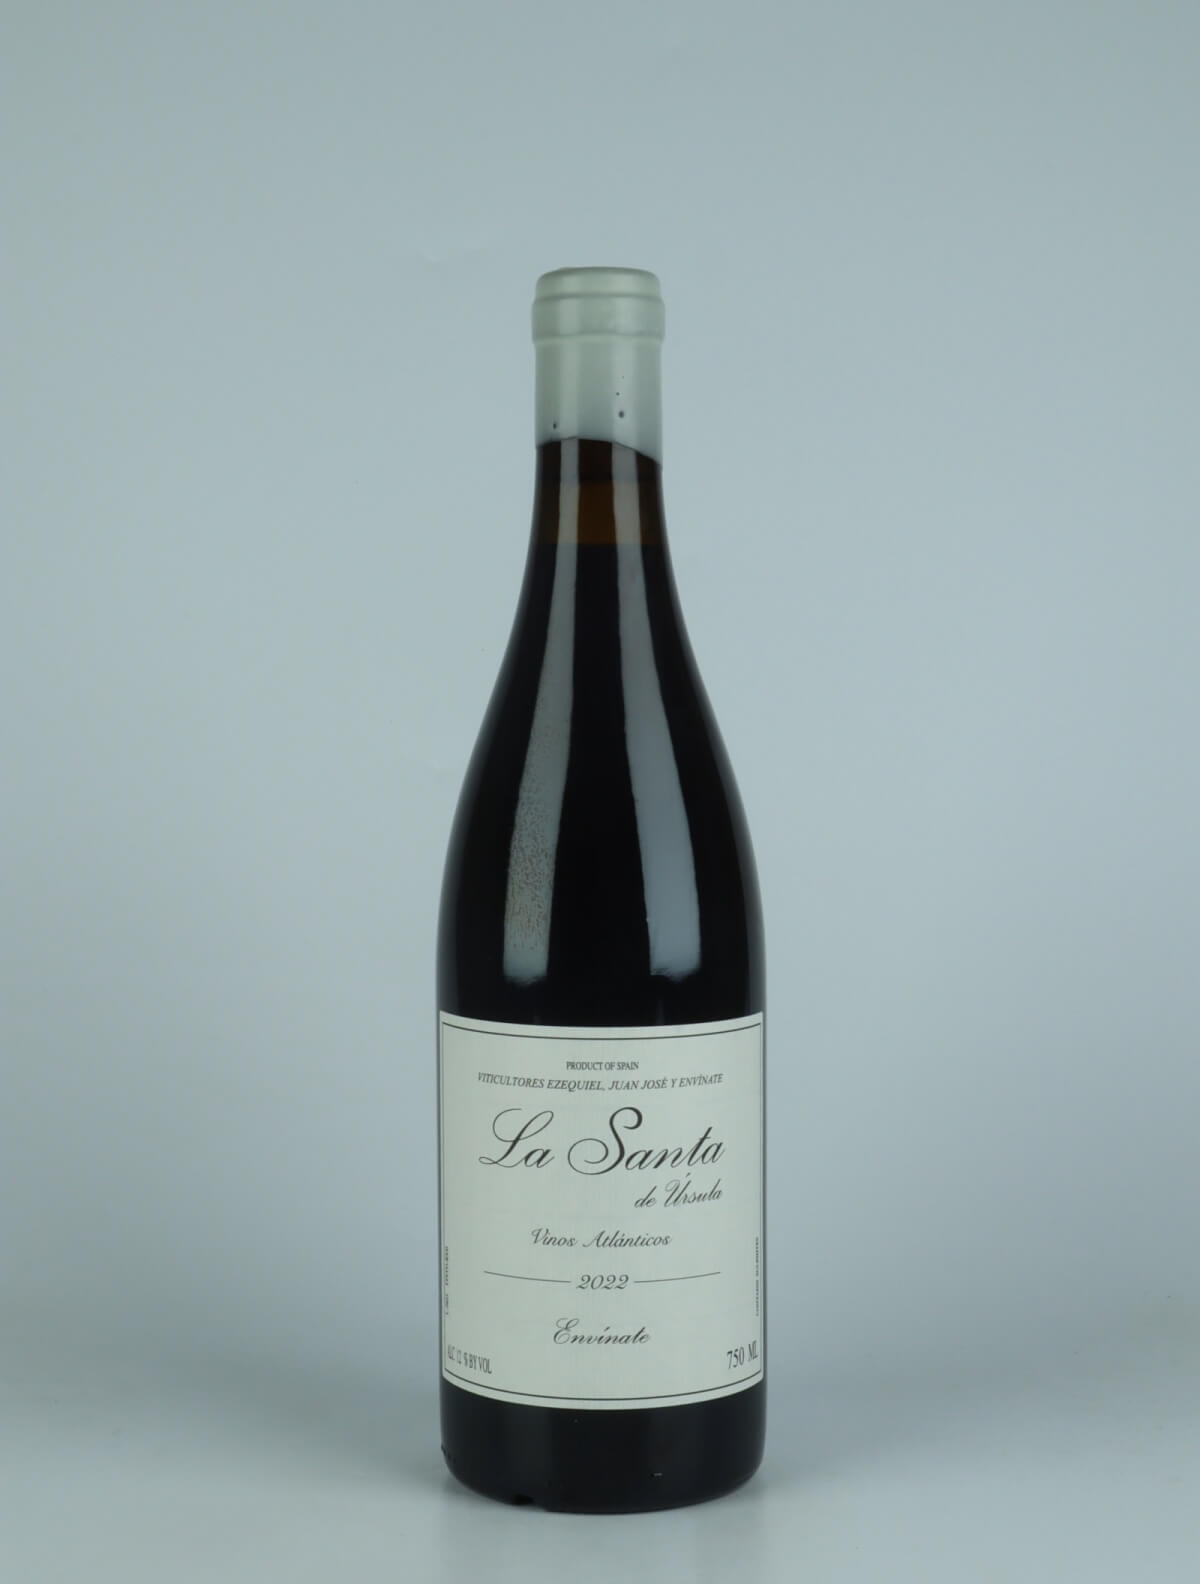 A bottle 2022 La Santa - Tenerife Red wine from Envínate,  in Spain